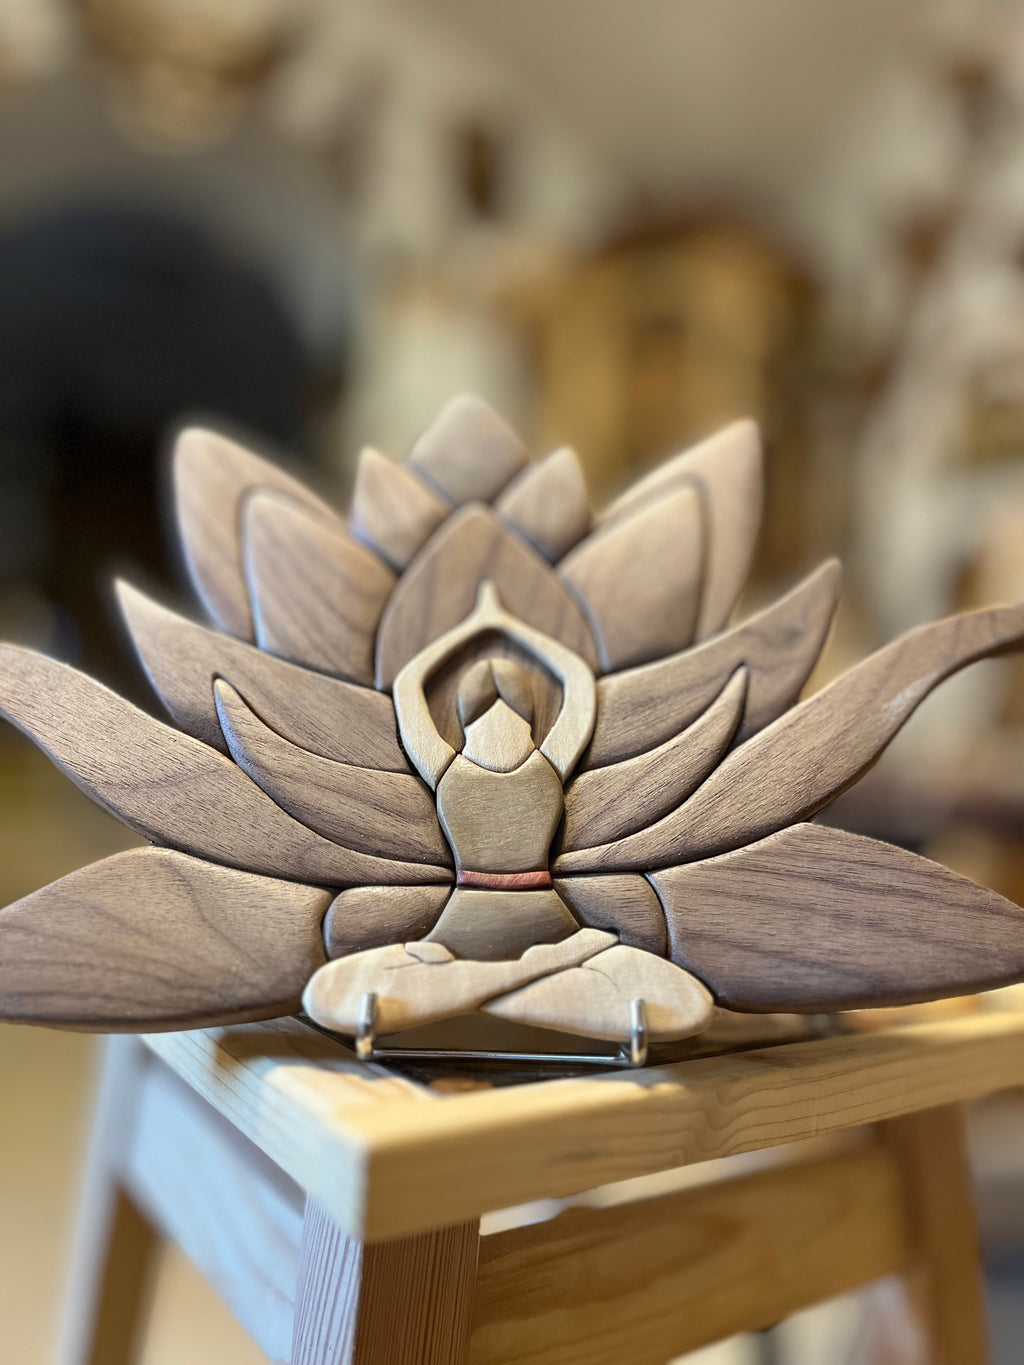 Yoga Lotus